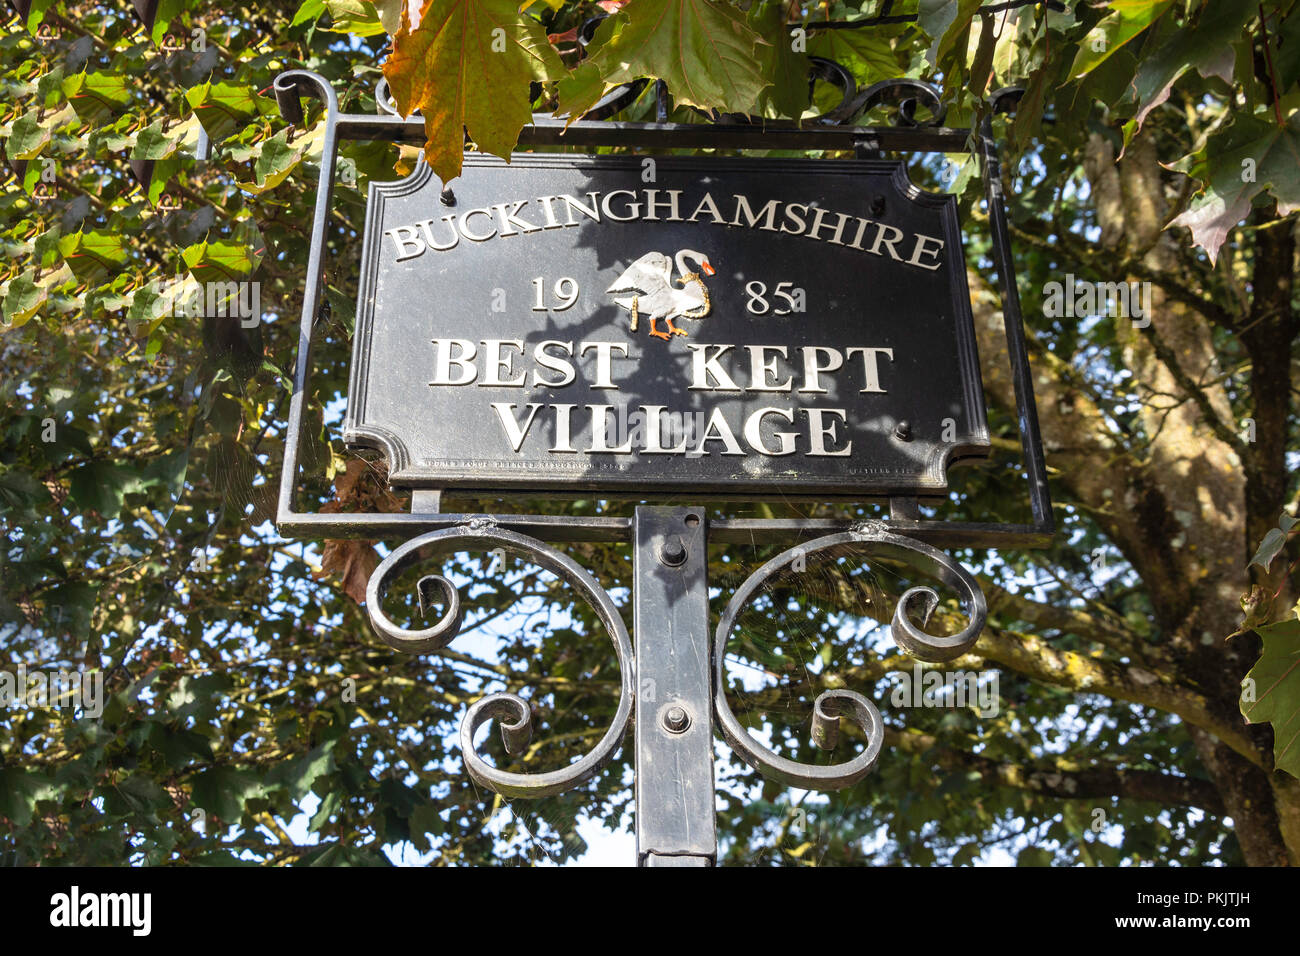 Buckinghamshire meglio conservato villaggio segno, Windmill Road, Fulmer, Buckinghamshire, Inghilterra, Regno Unito Foto Stock